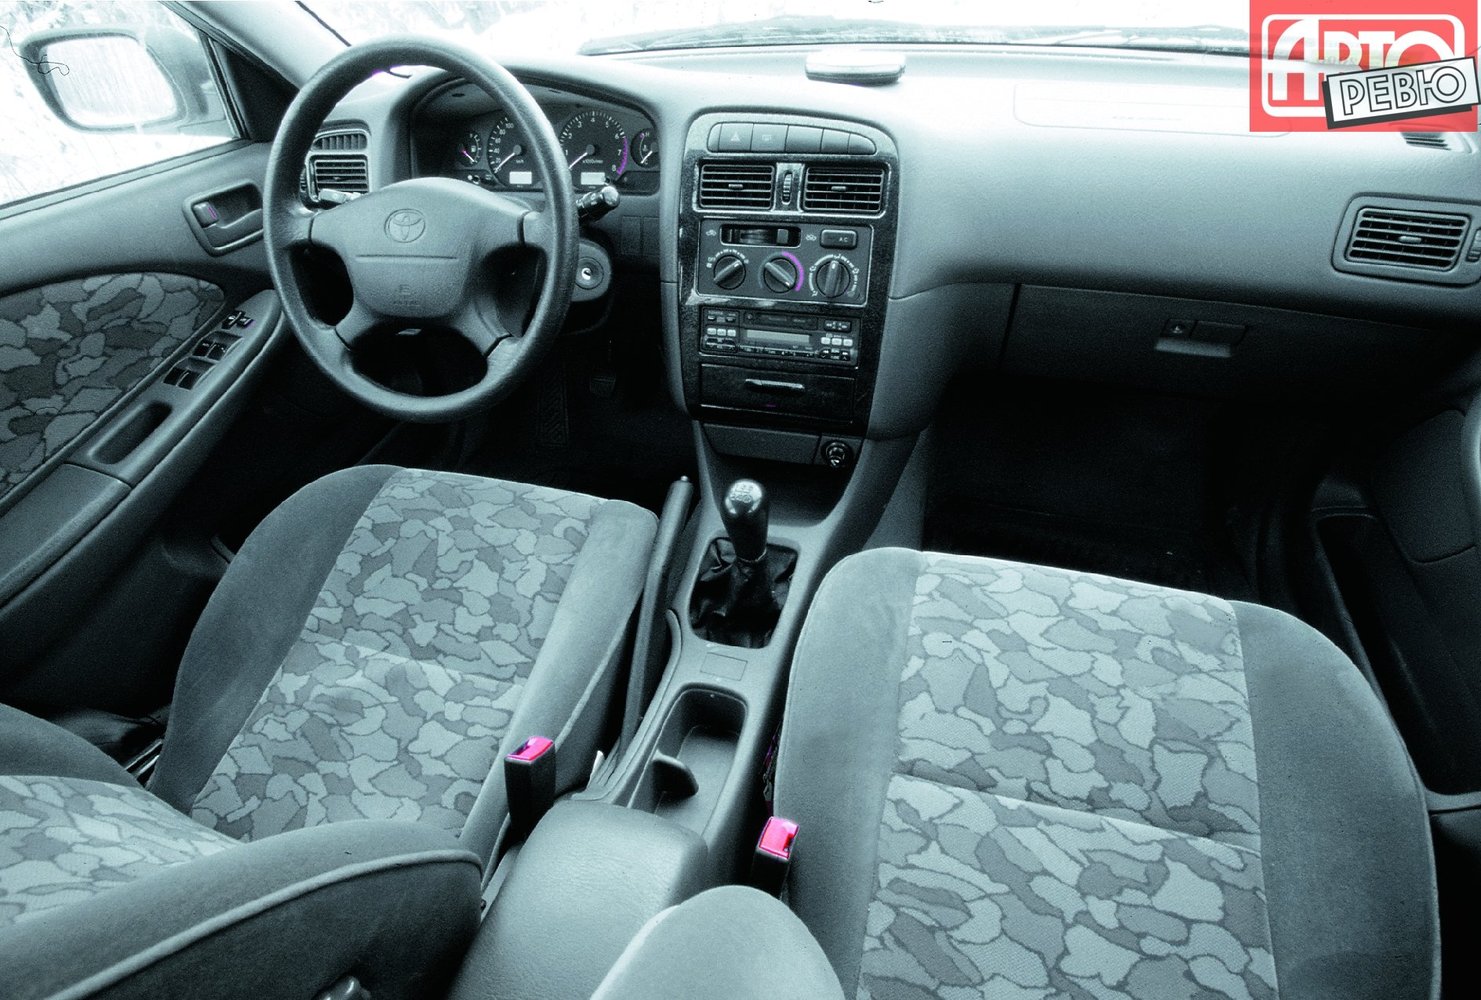 универсал Toyota Avensis 1997 - 2000г выпуска модификация 1.6 MT (101 л.с.)